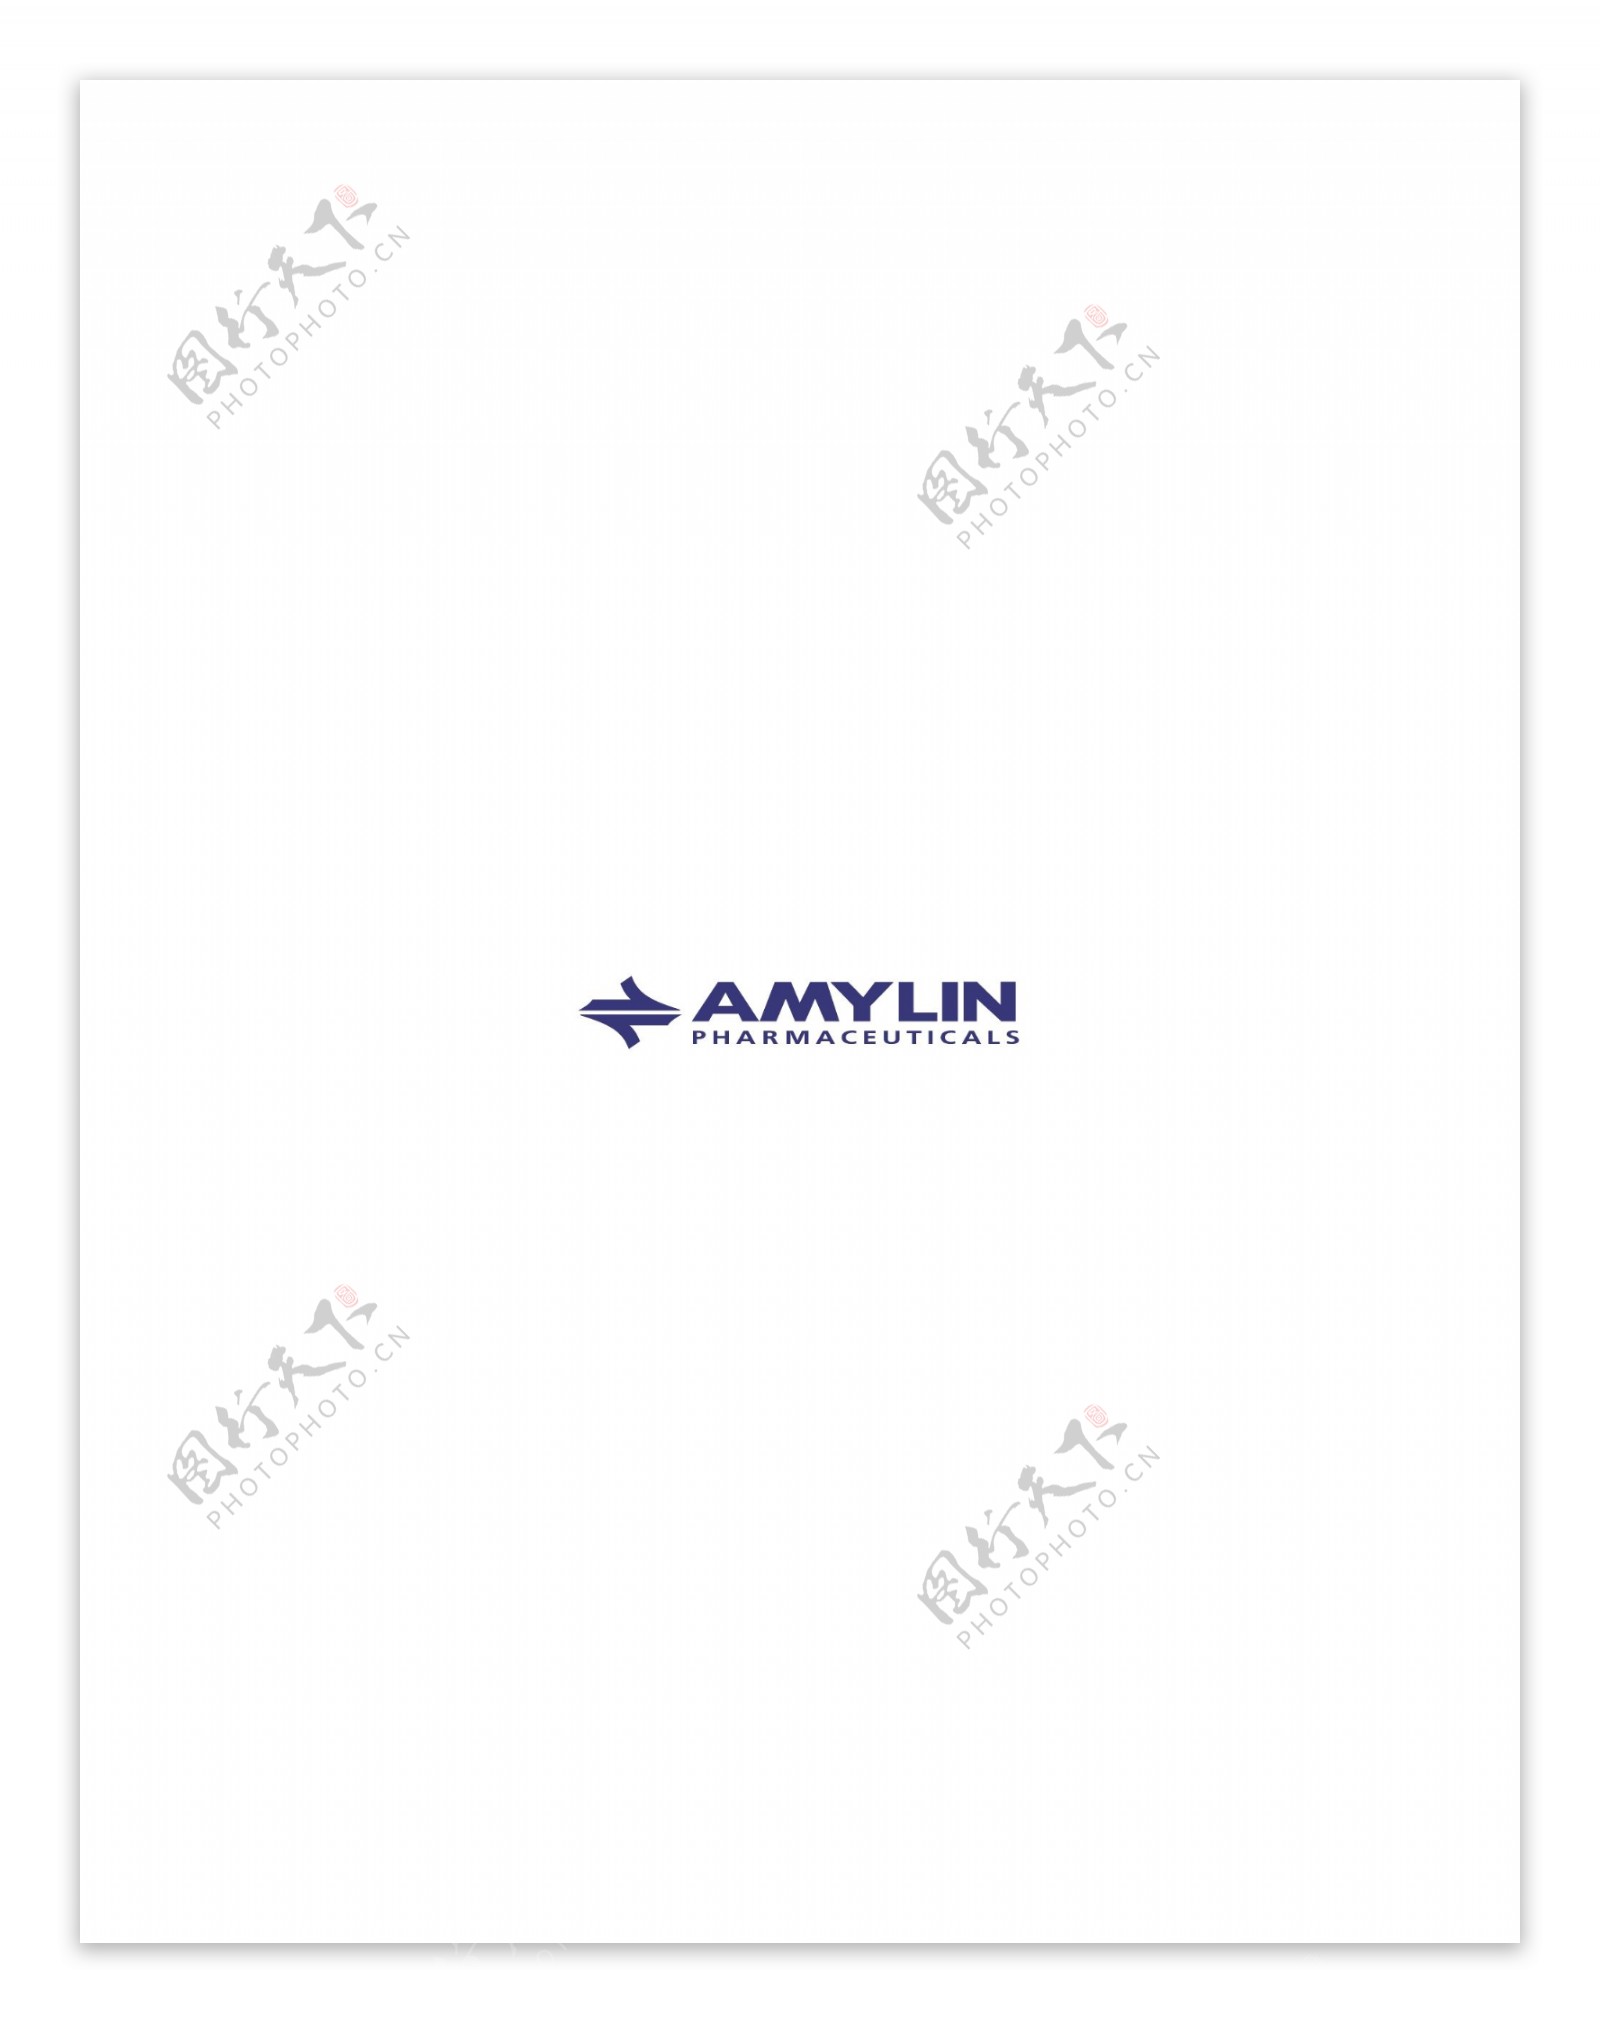 AmylinPharmaceuticalslogo设计欣赏IT高科技公司标志AmylinPharmaceuticals下载标志设计欣赏